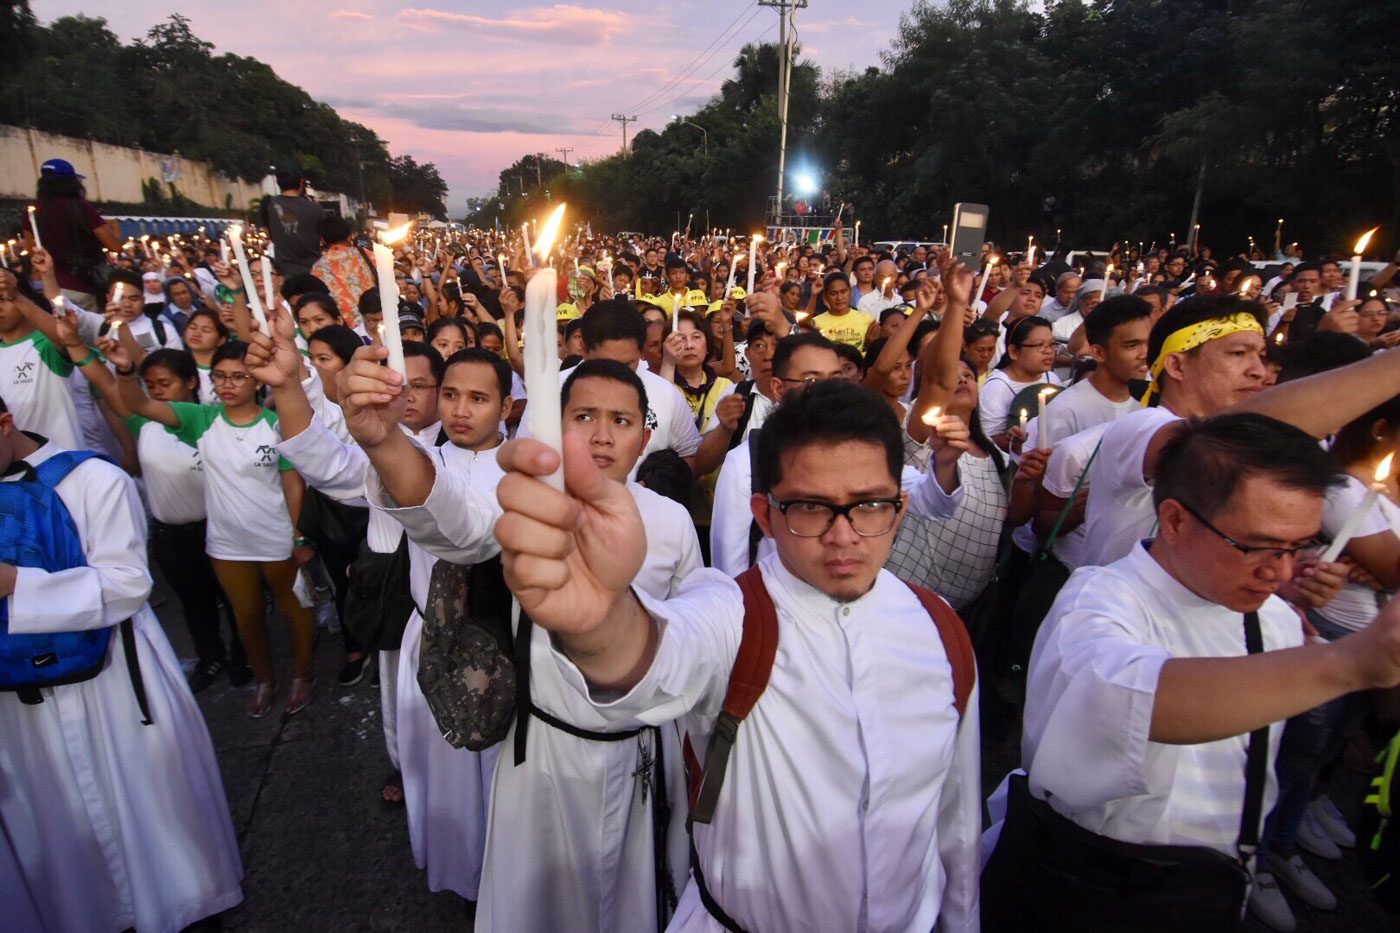 Catholics return to EDSA as bishop warns of ‘curse’